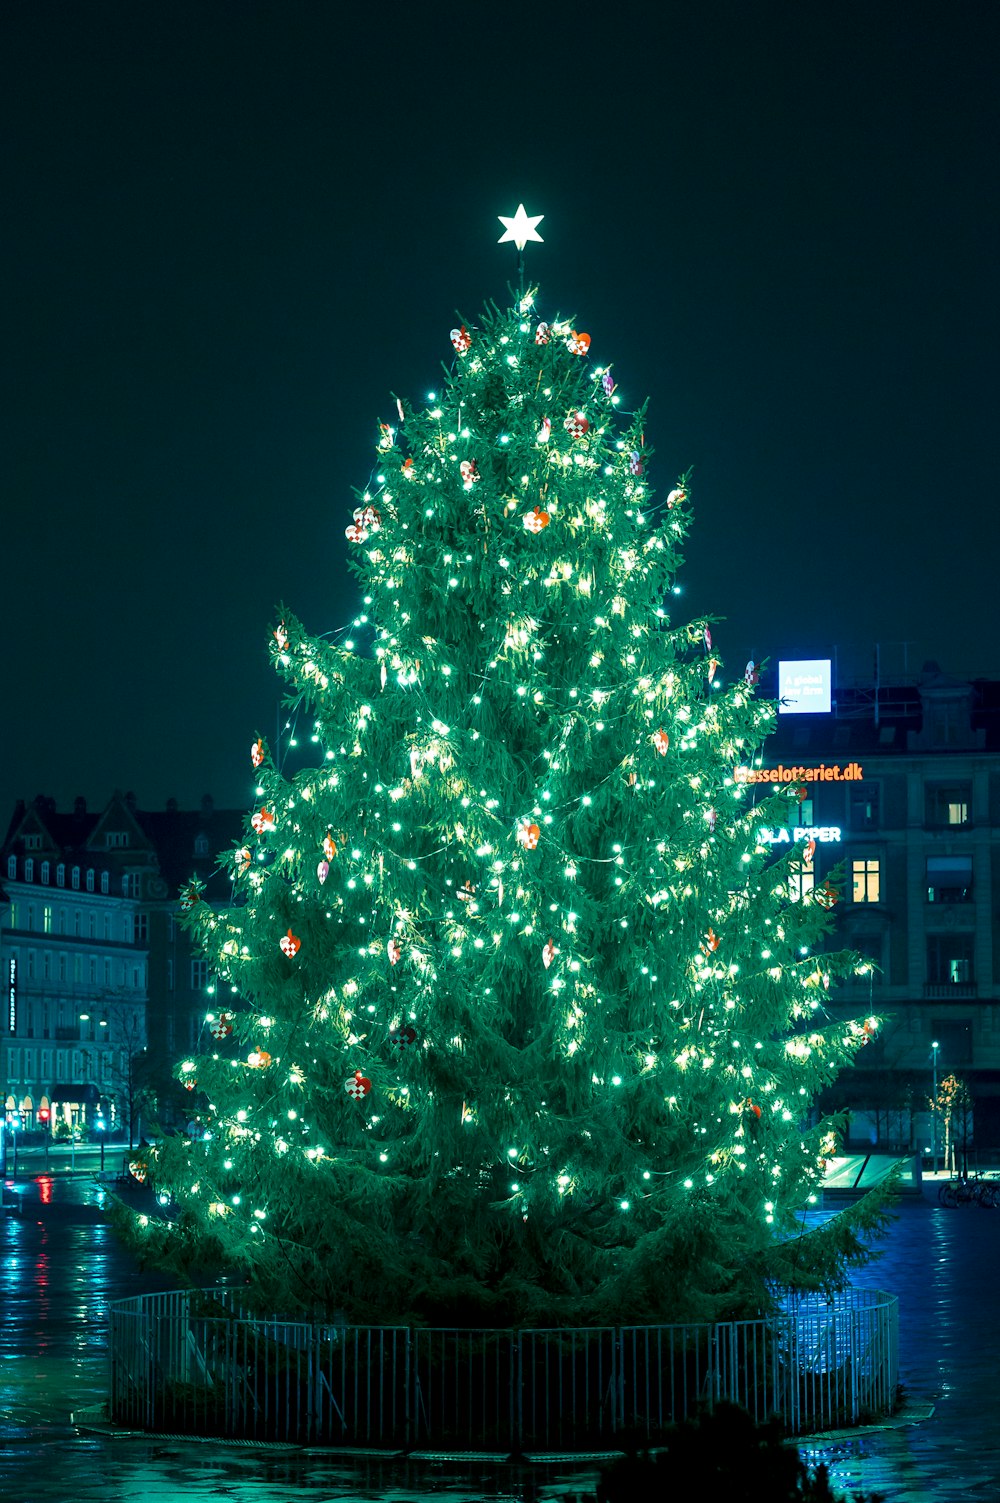 Arbre de Noël vert avec guirlandes lumineuses pendant la nuit